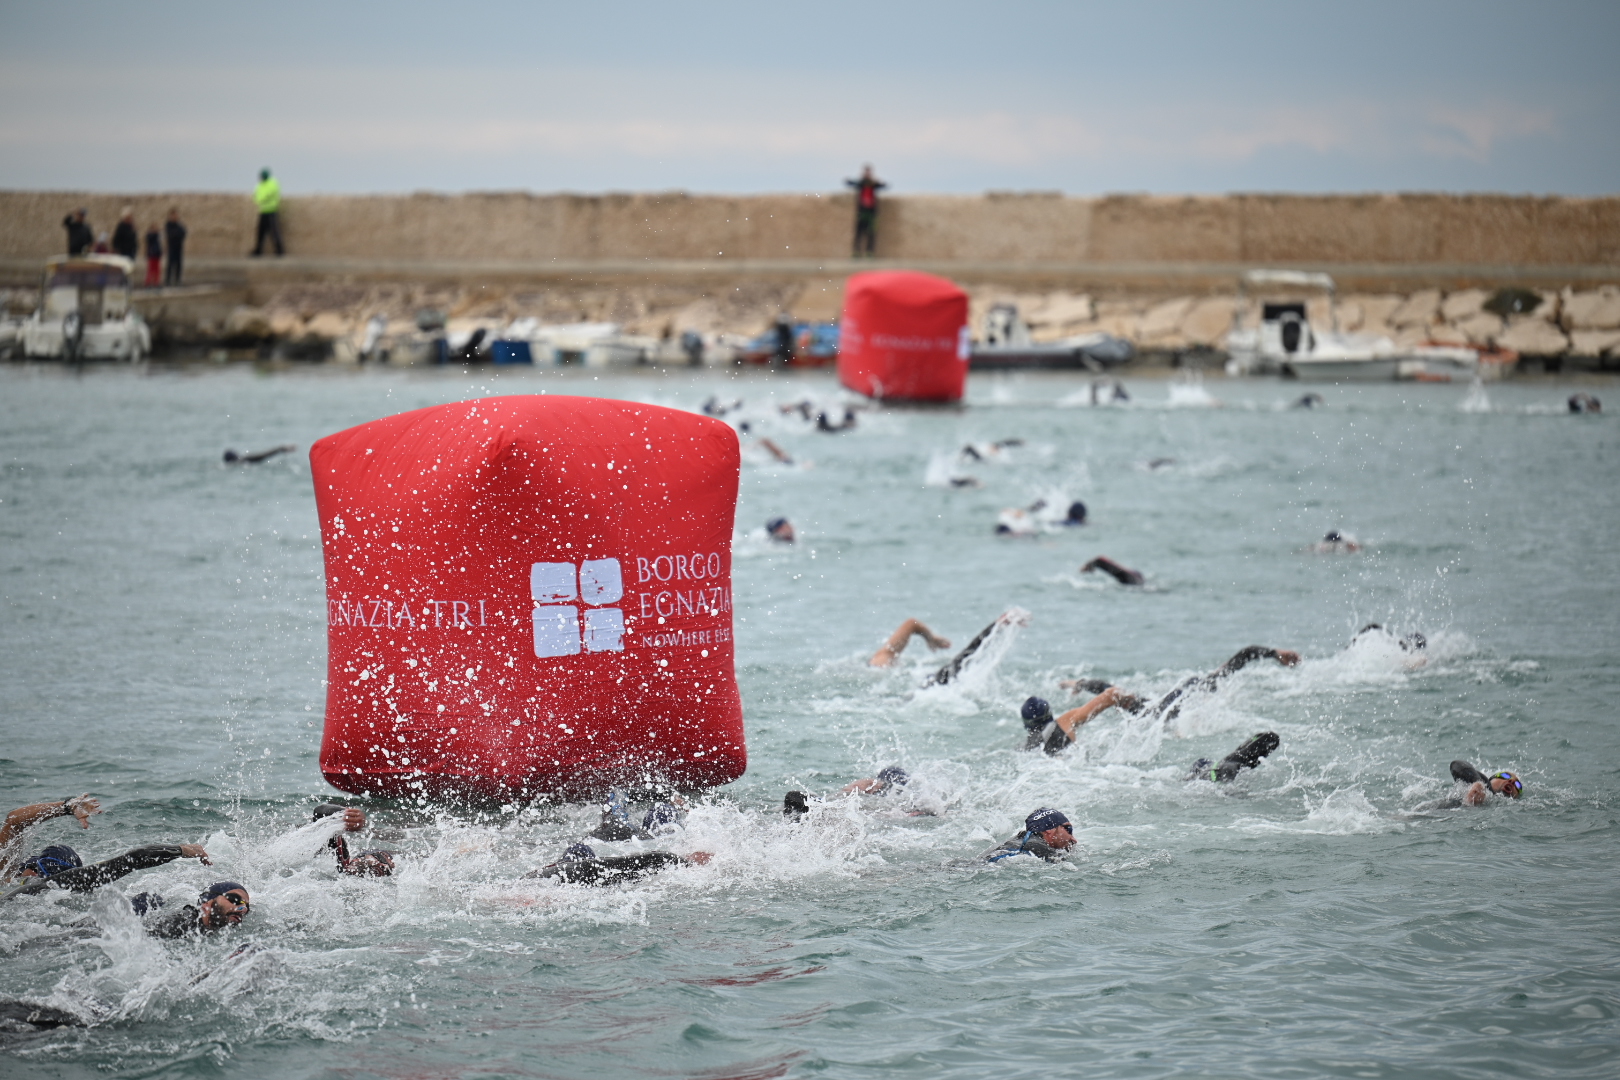 Confermata la quarta edizione dell'Egnazia Tri 2022, due grandi novità: il campionato Italiano di Triathlon Medio e il Triathlon Olimpico gold